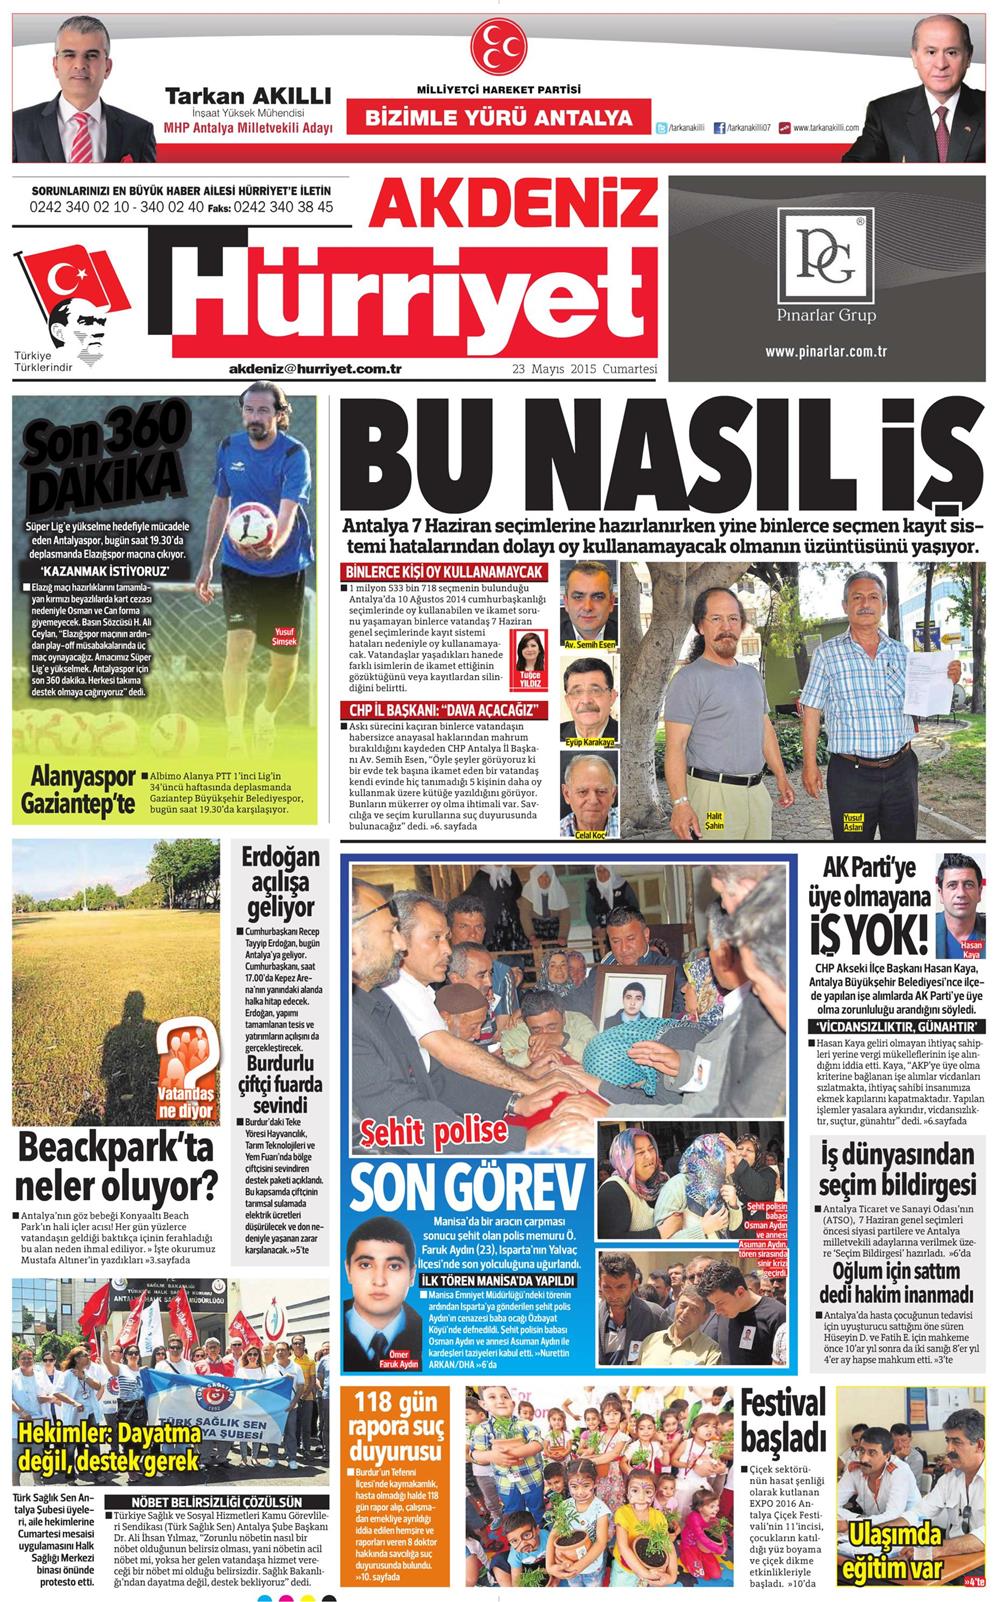 Hürriyet Akdeniz Gazetesi 23 Mayıs 2015 Manşeti